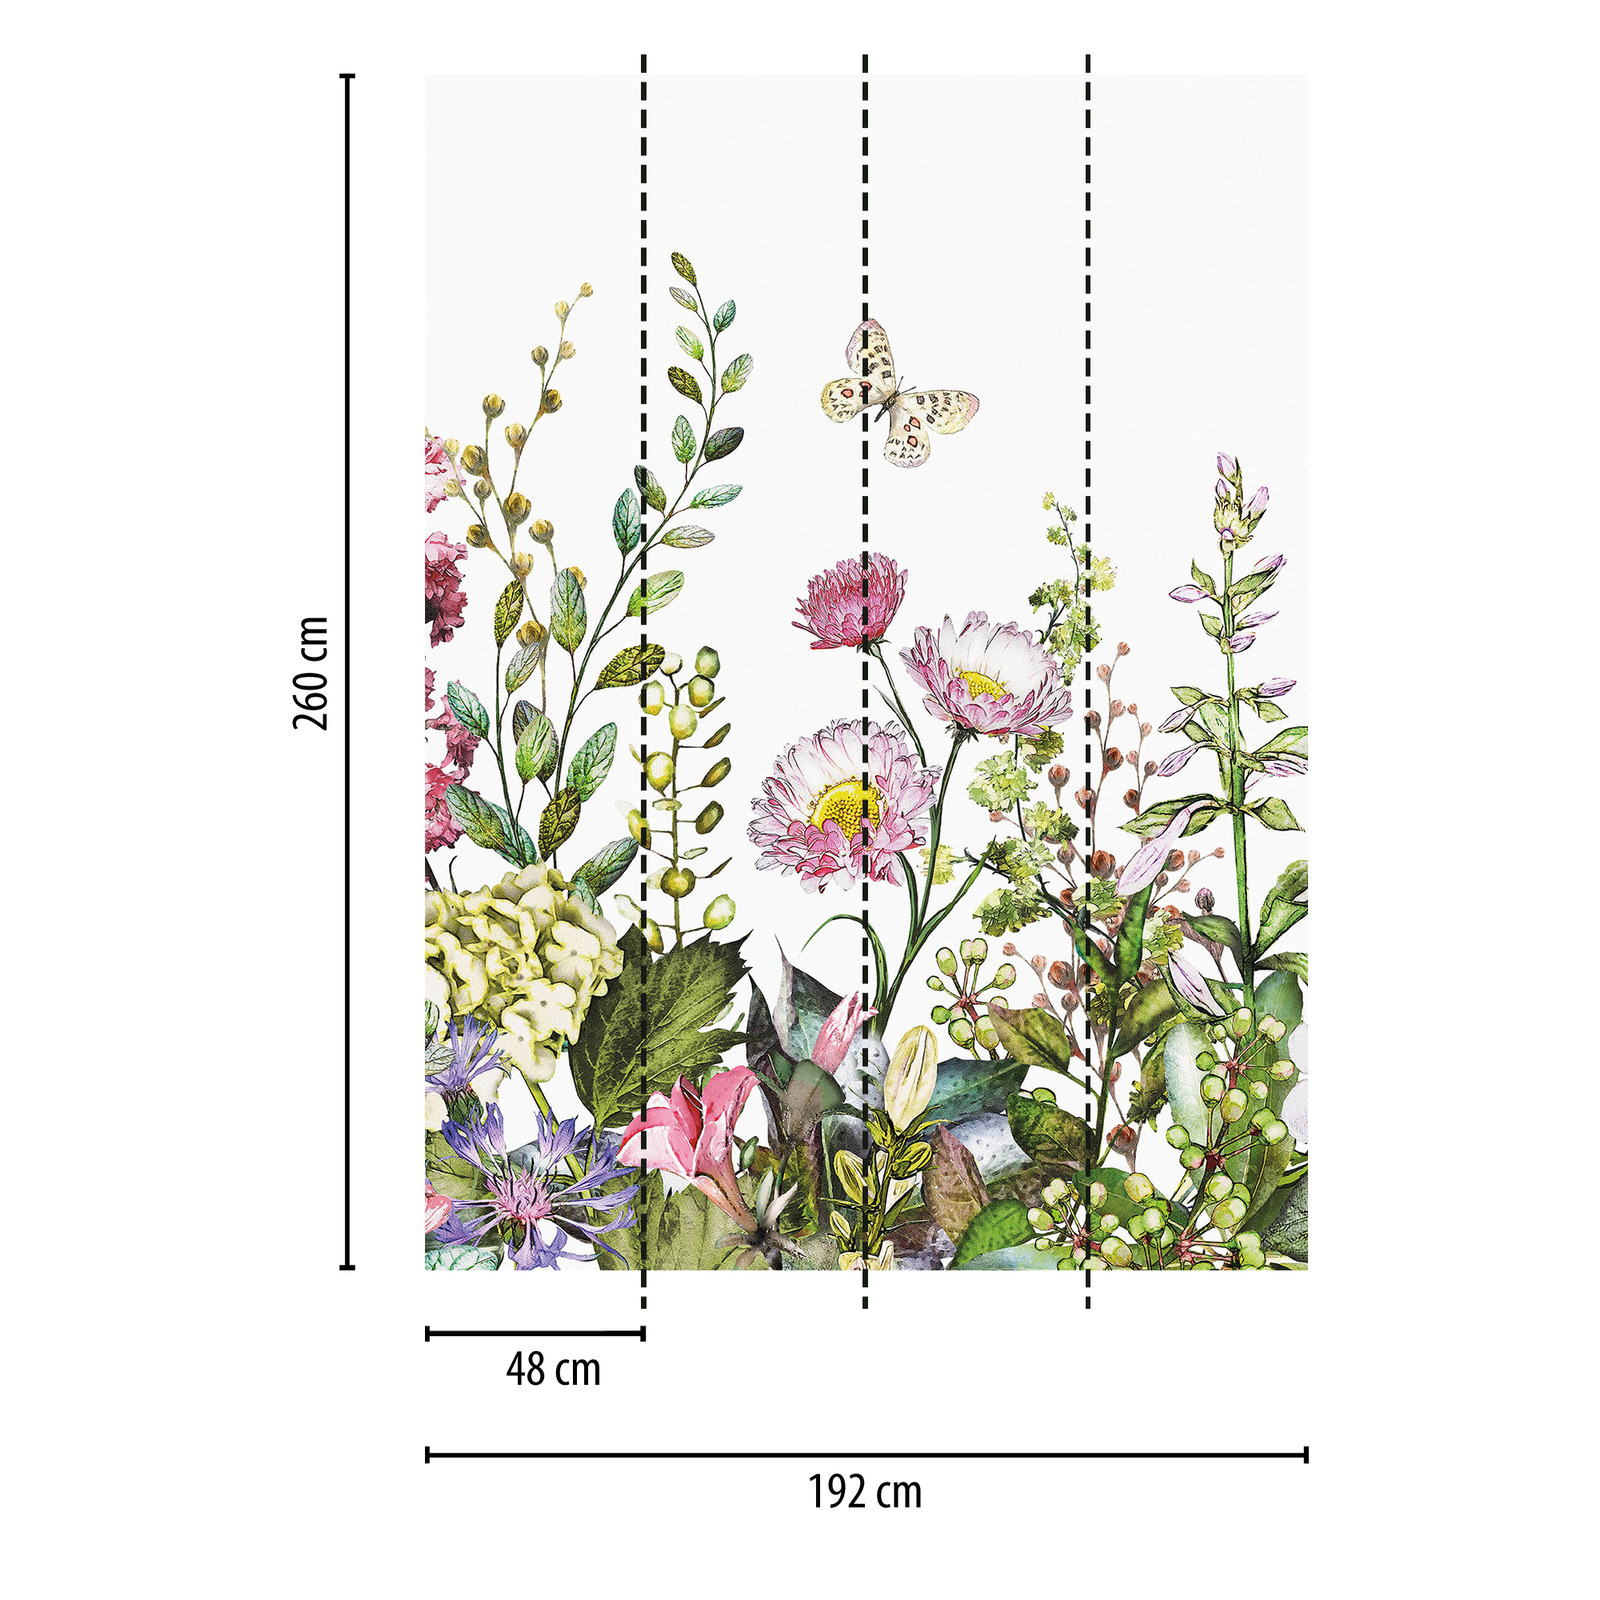             Papier peint panoramique étroit Prairie fleurie - multicolore
        